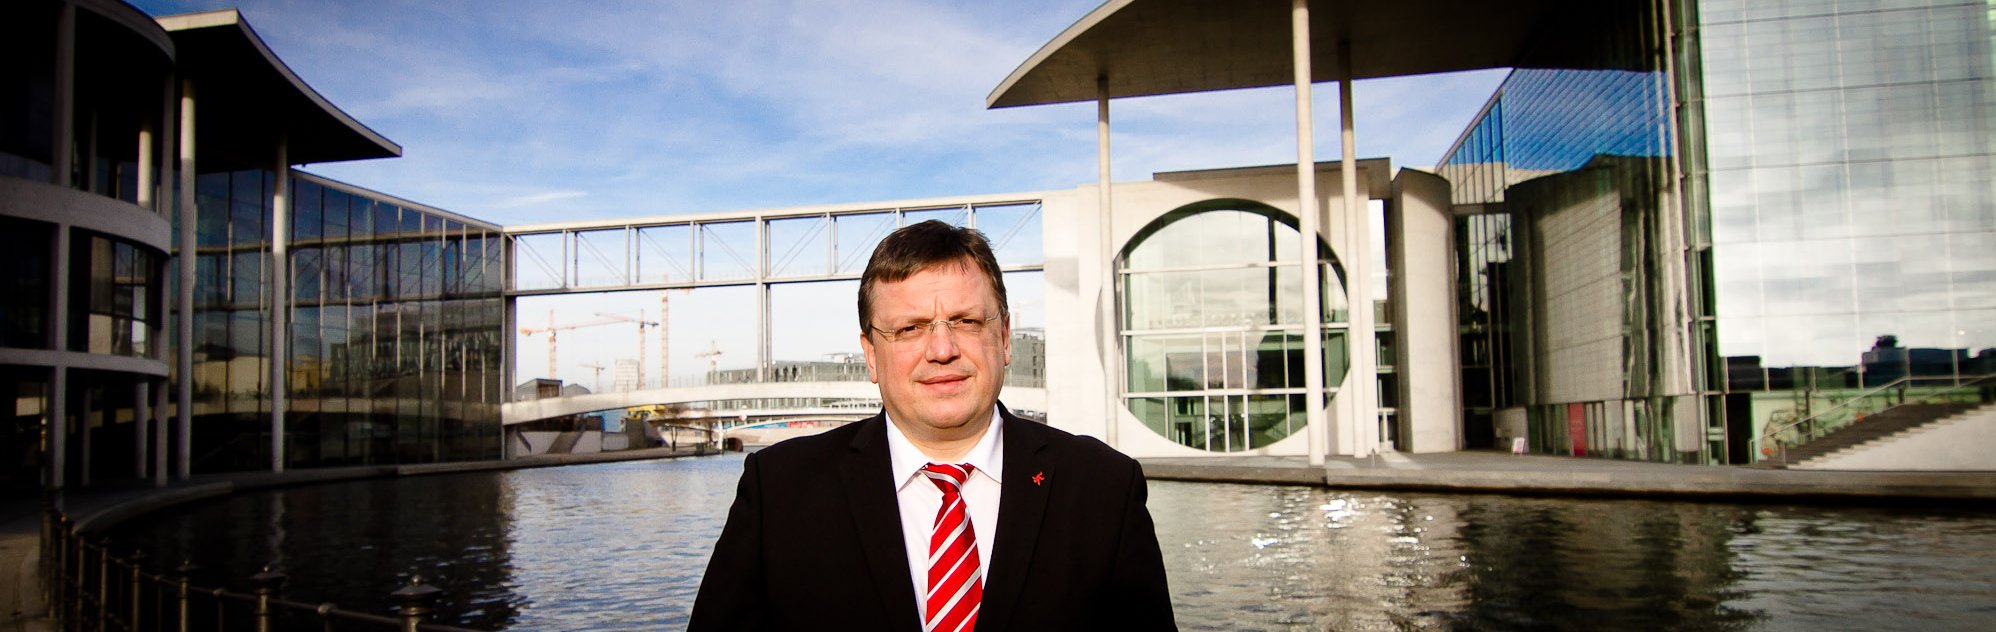 Andreas Rimkus begrüßt die erzielte Einigung von ver.di zum Zukunftskonzept Ausbildung bei der Deutschen Telekom AG